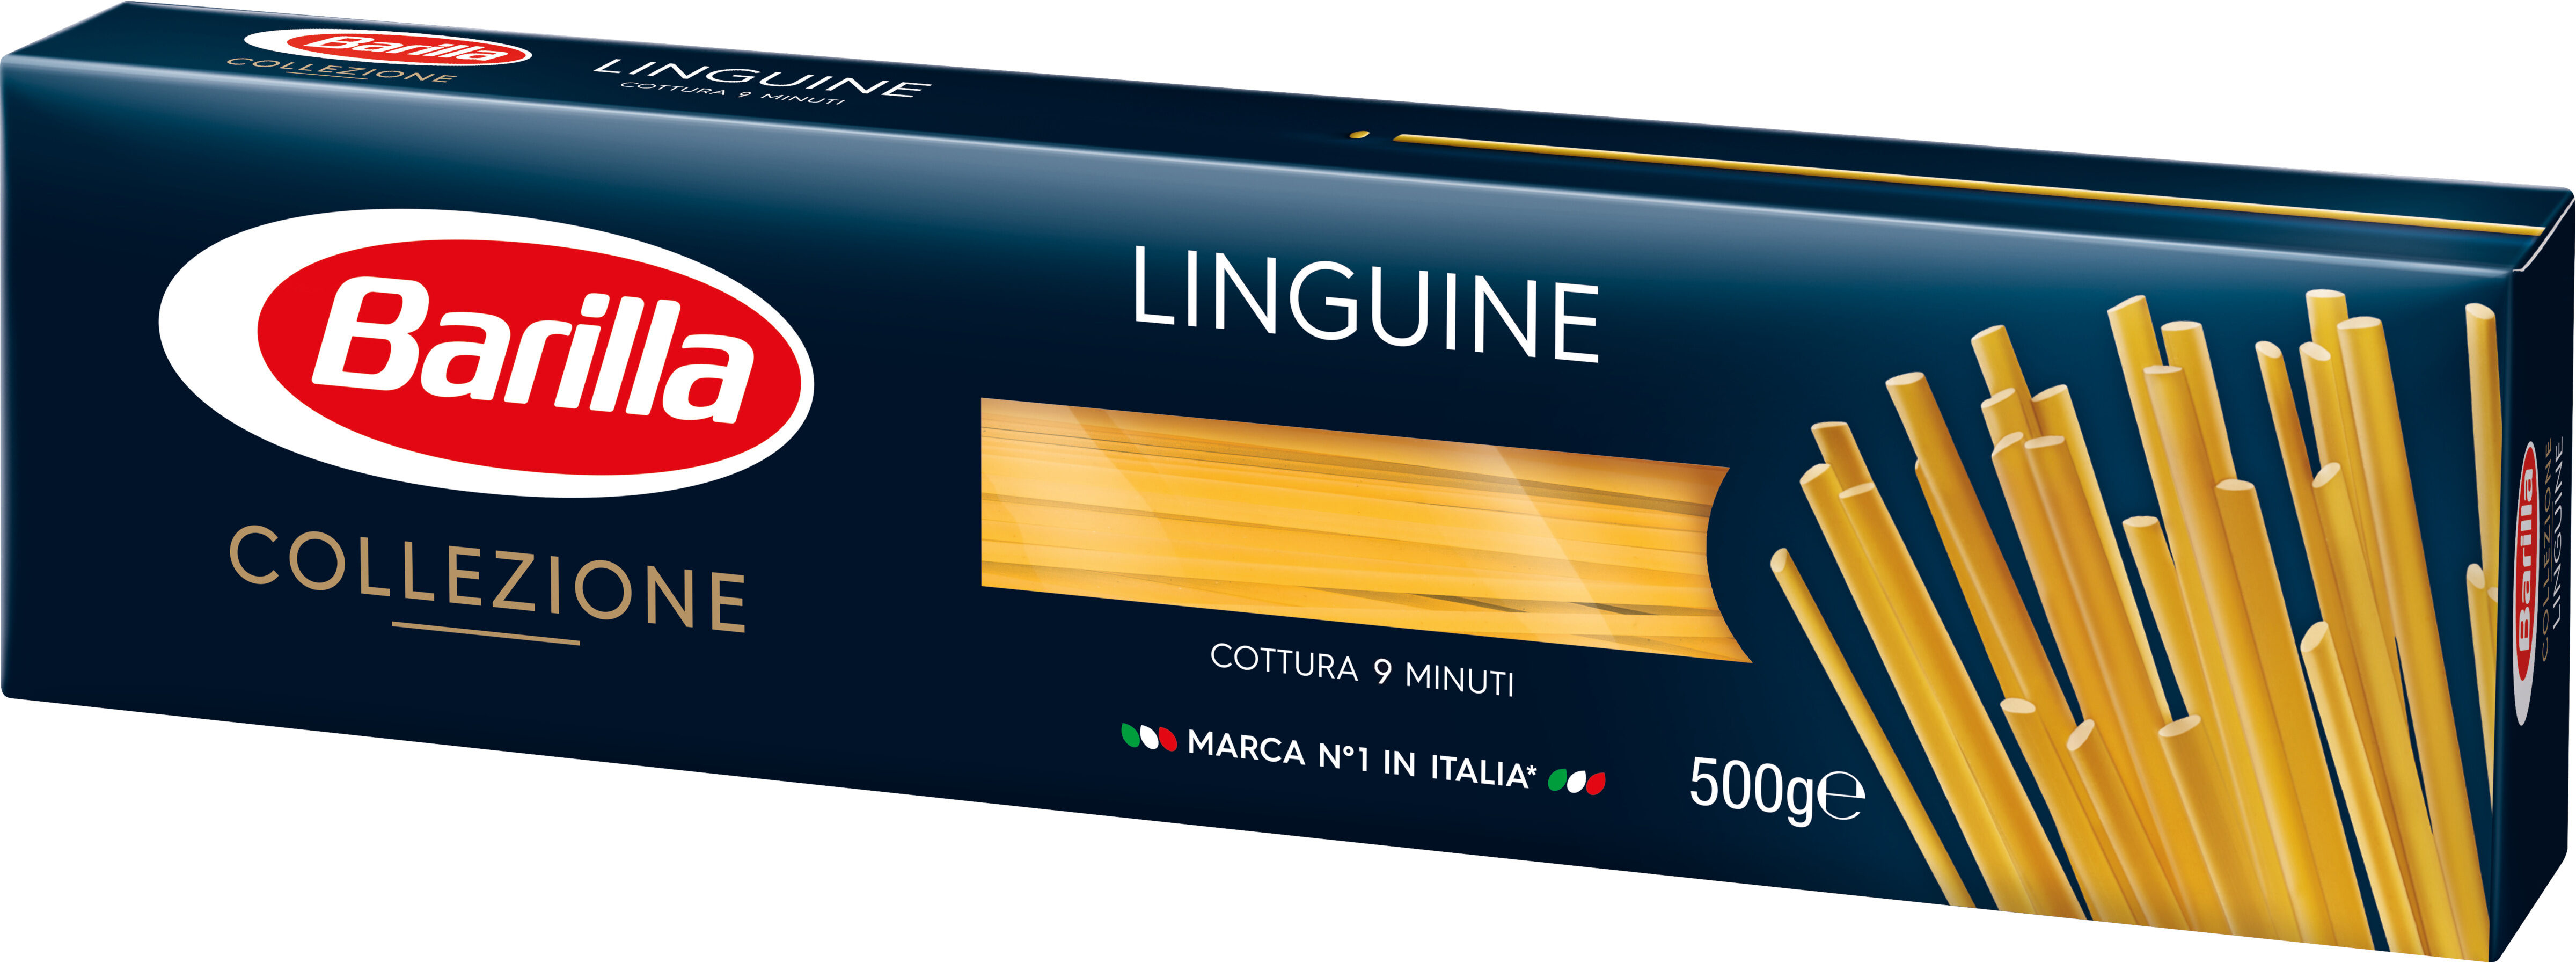 Barilla pates collezione linguine 500g - Produkt - fr